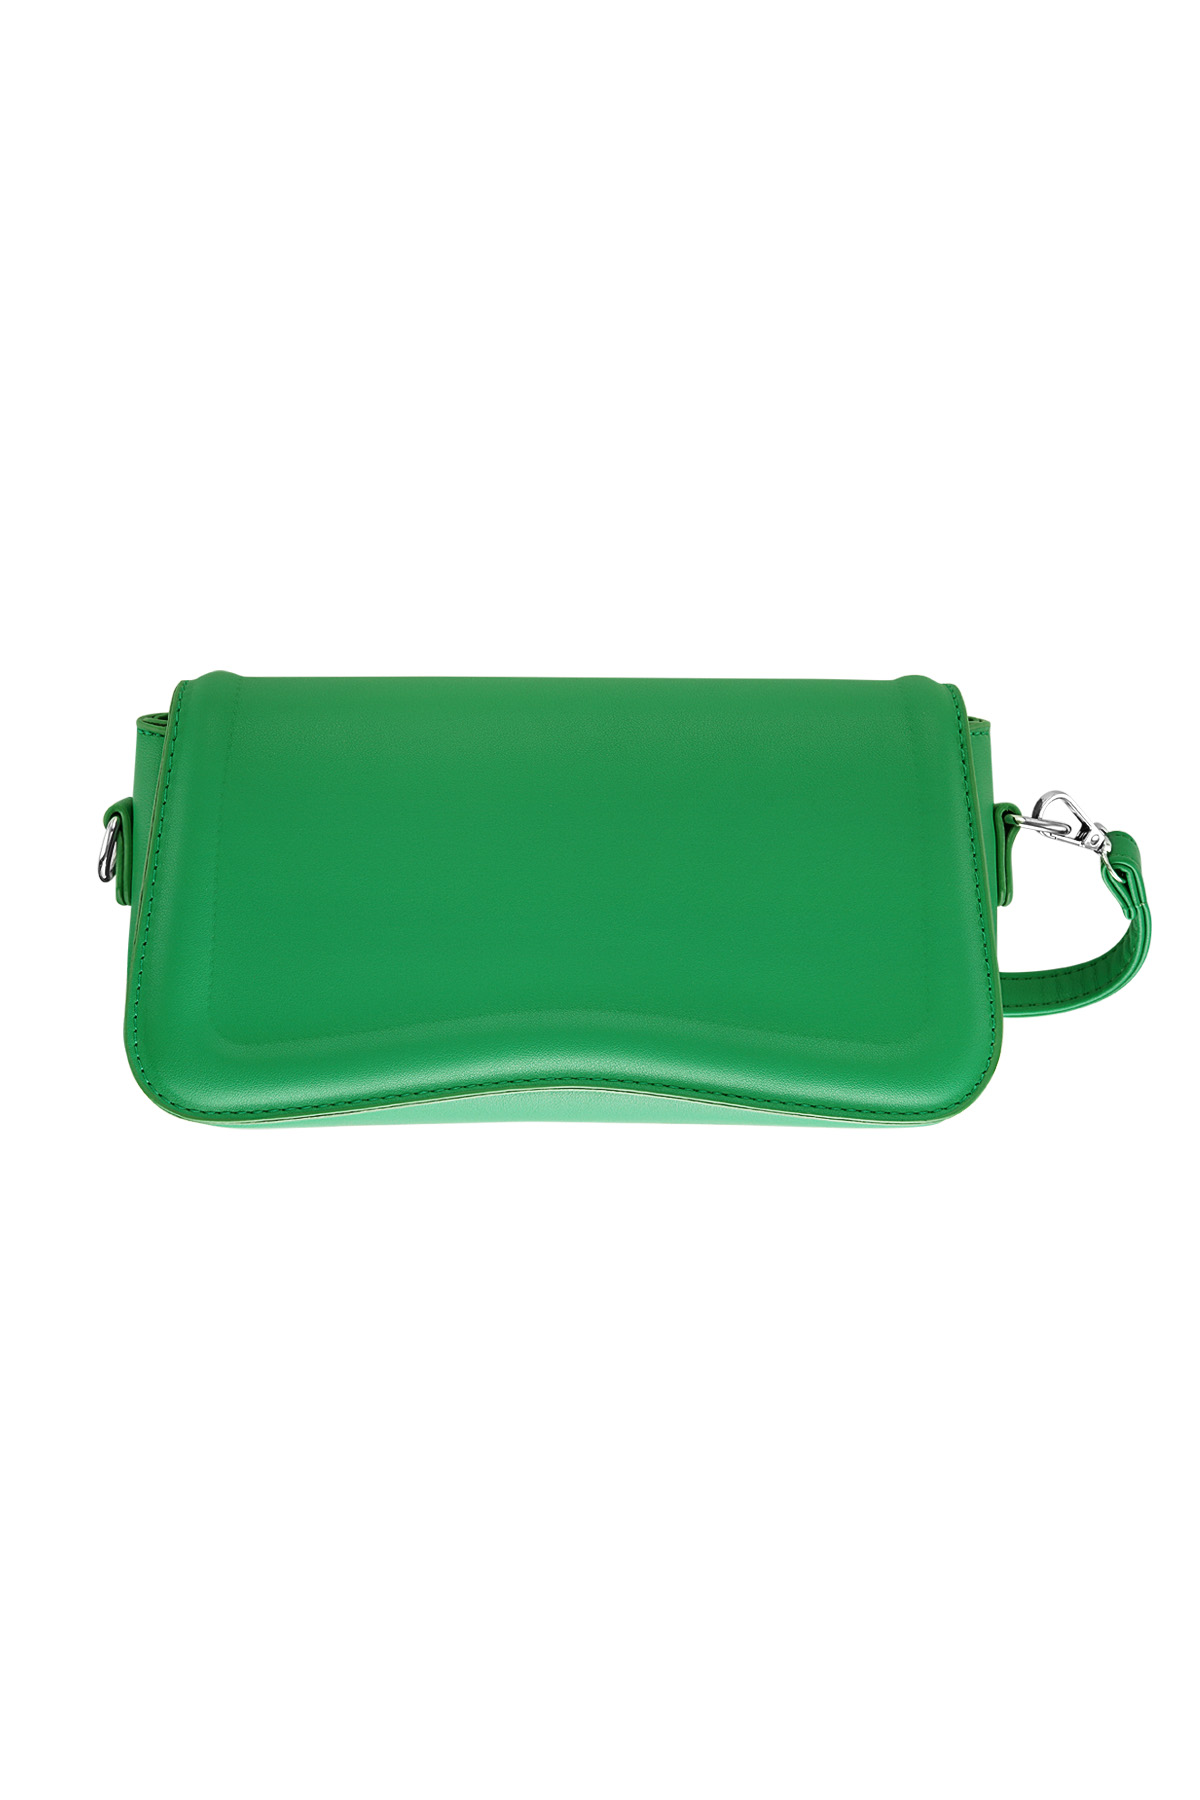 Taschenwellenform - grünes PU h5 